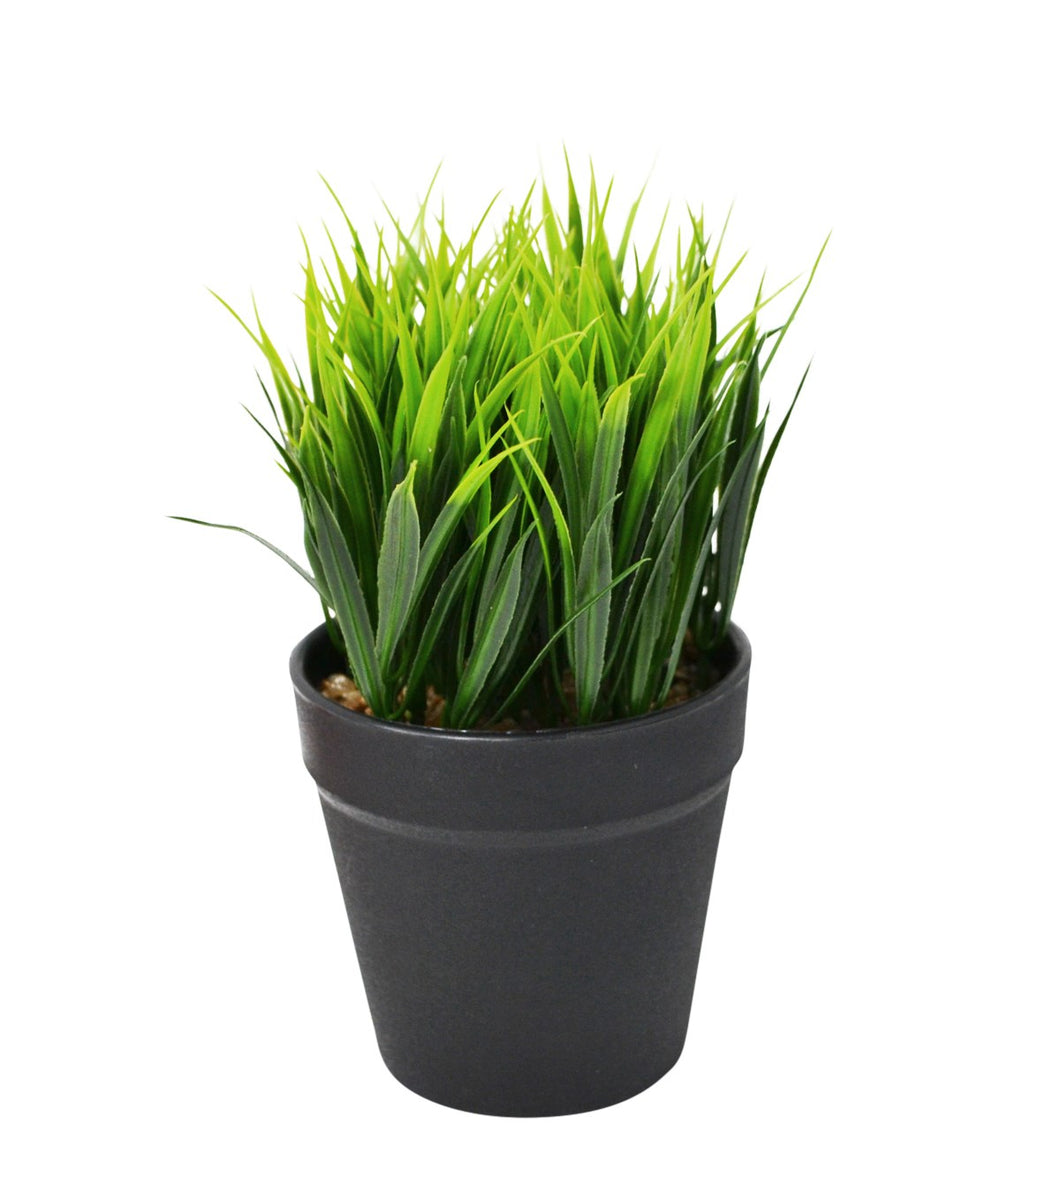 Green Grass in Pot